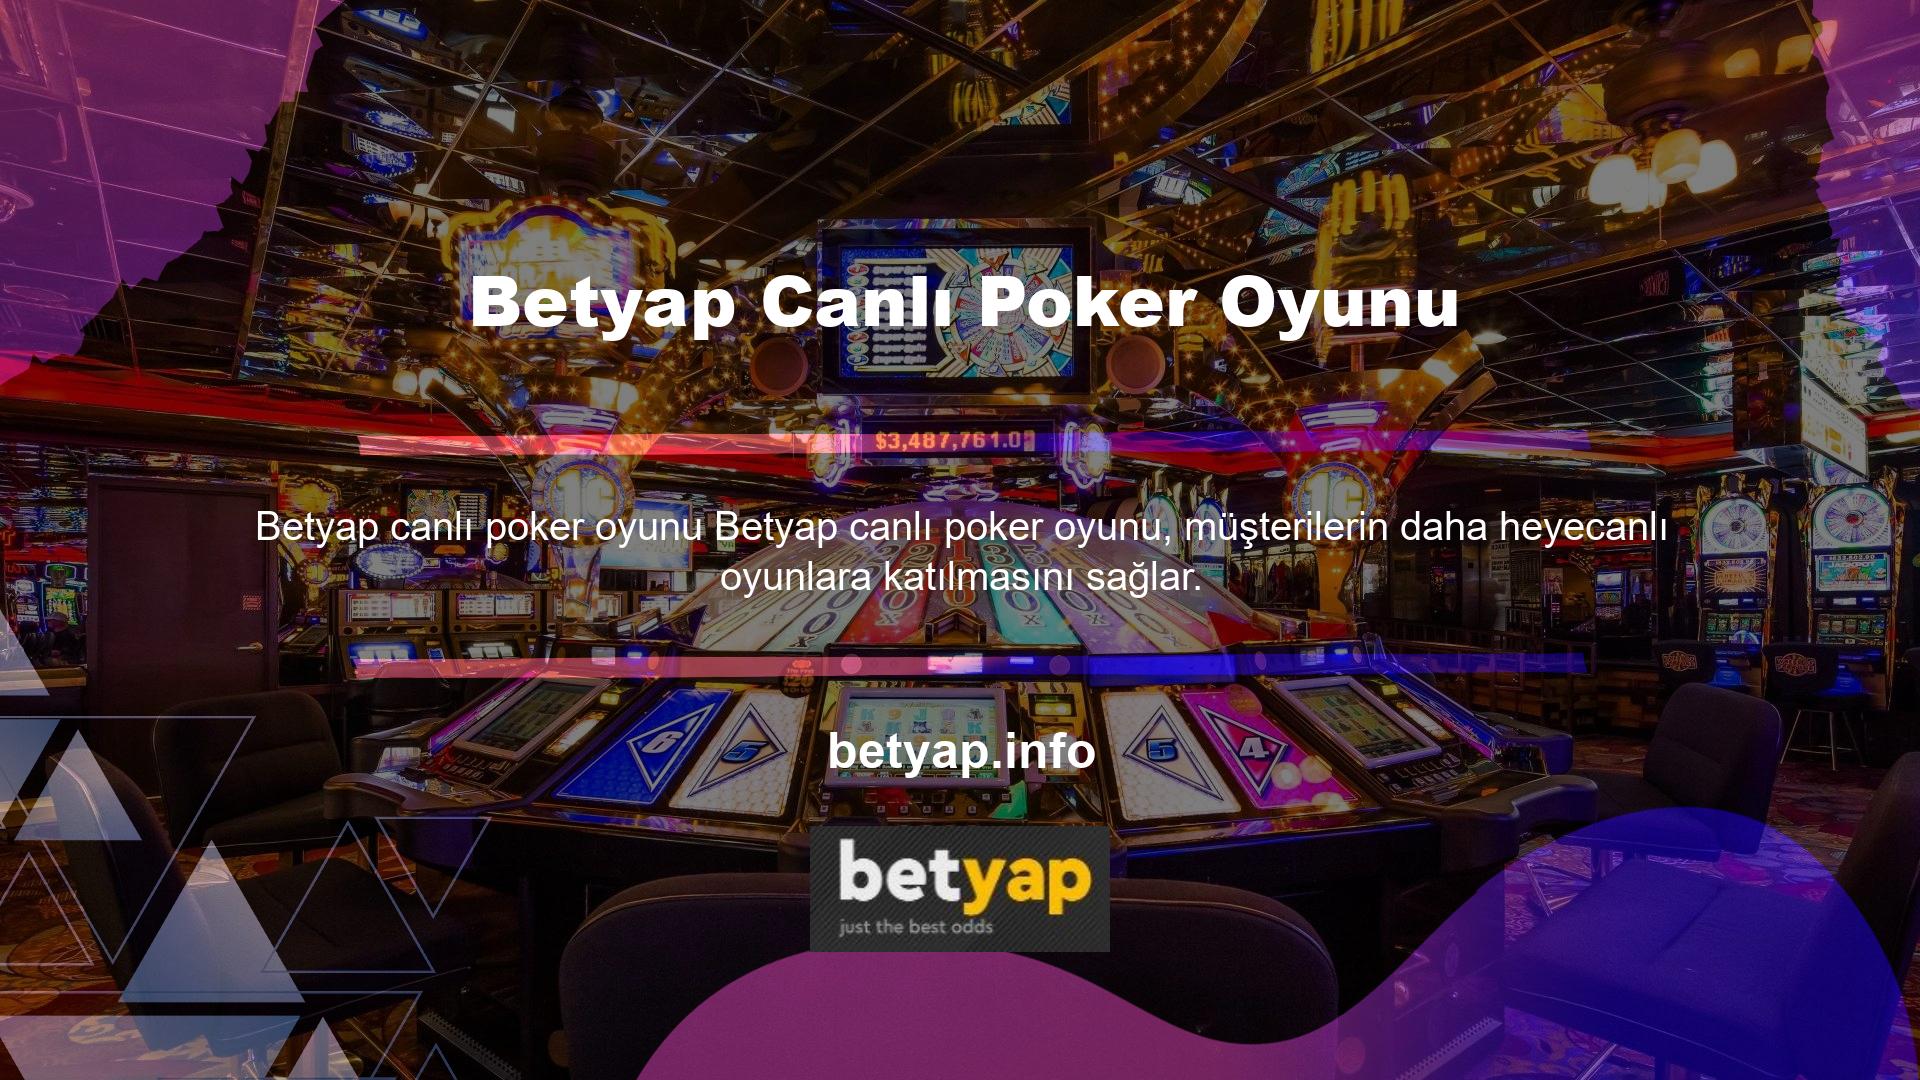 Hatta birçok oyun sağlayıcının yer aldığı canlı casino bölümünde poker oyunları canlı olarak izlenebilmektedir